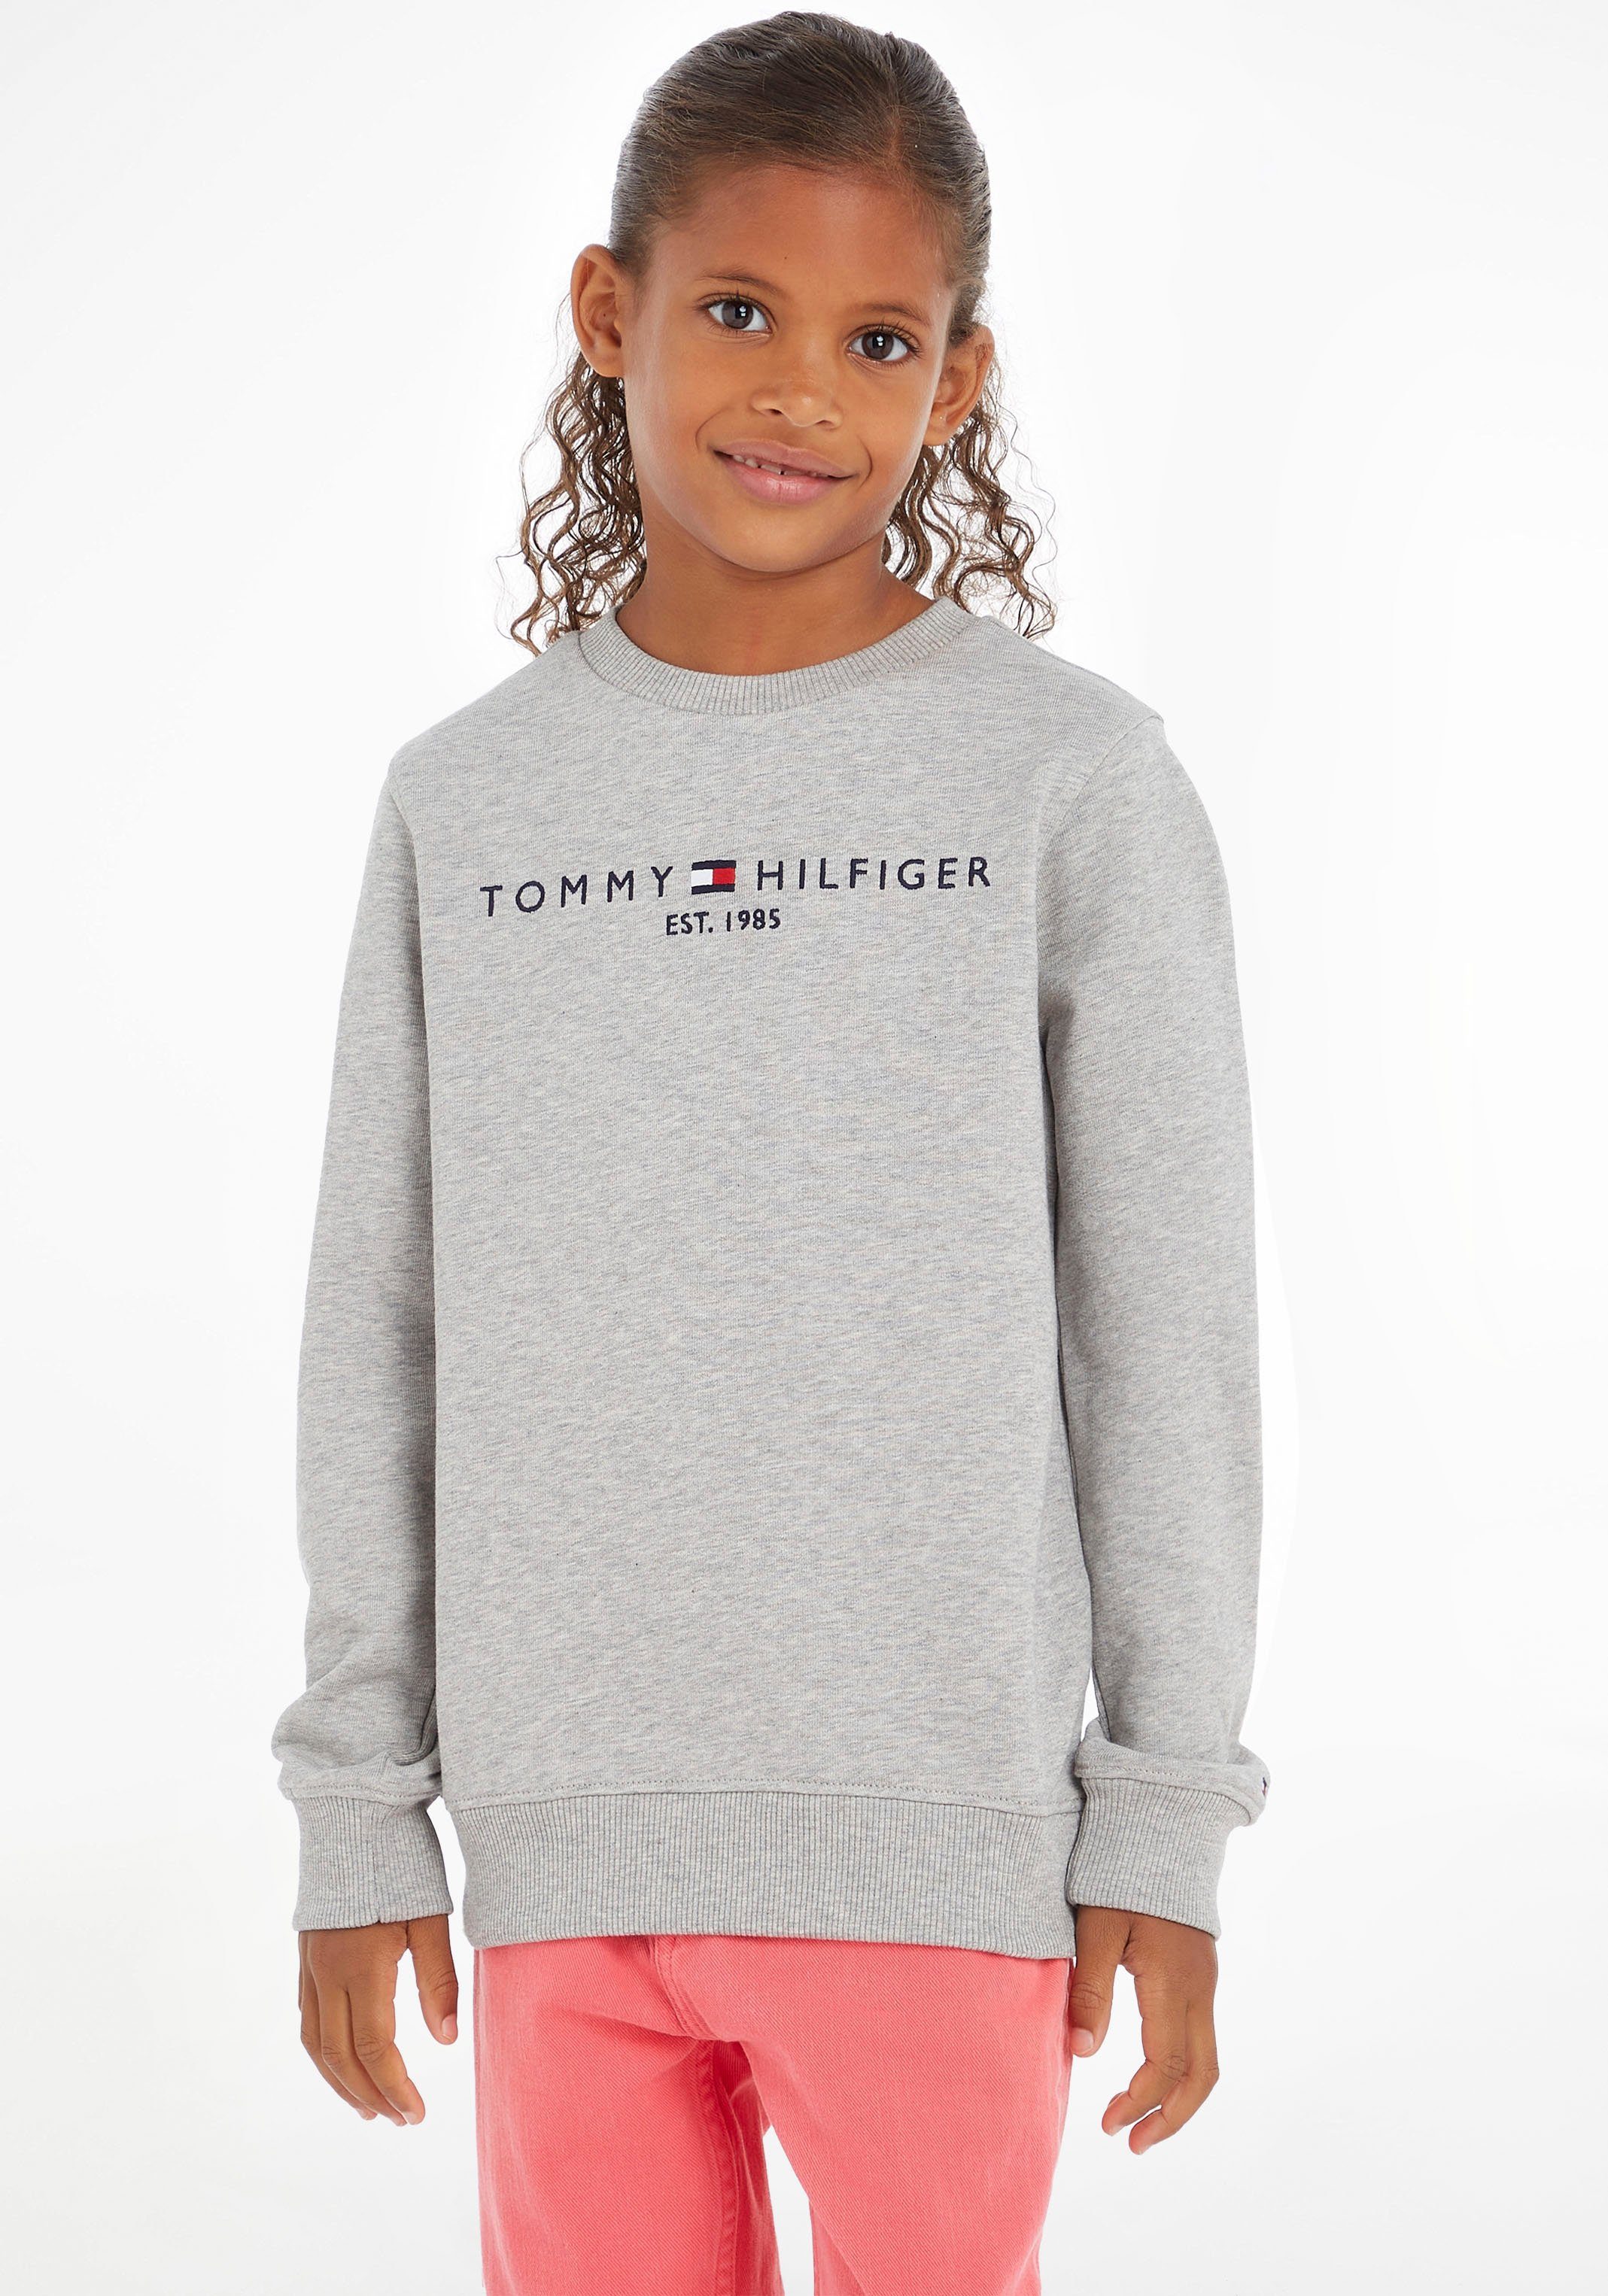 Kaufverhalten Tommy Hilfiger Sweatshirt ESSENTIAL Kids SWEATSHIRT MiniMe,für Mädchen Junior und Kinder Jungen